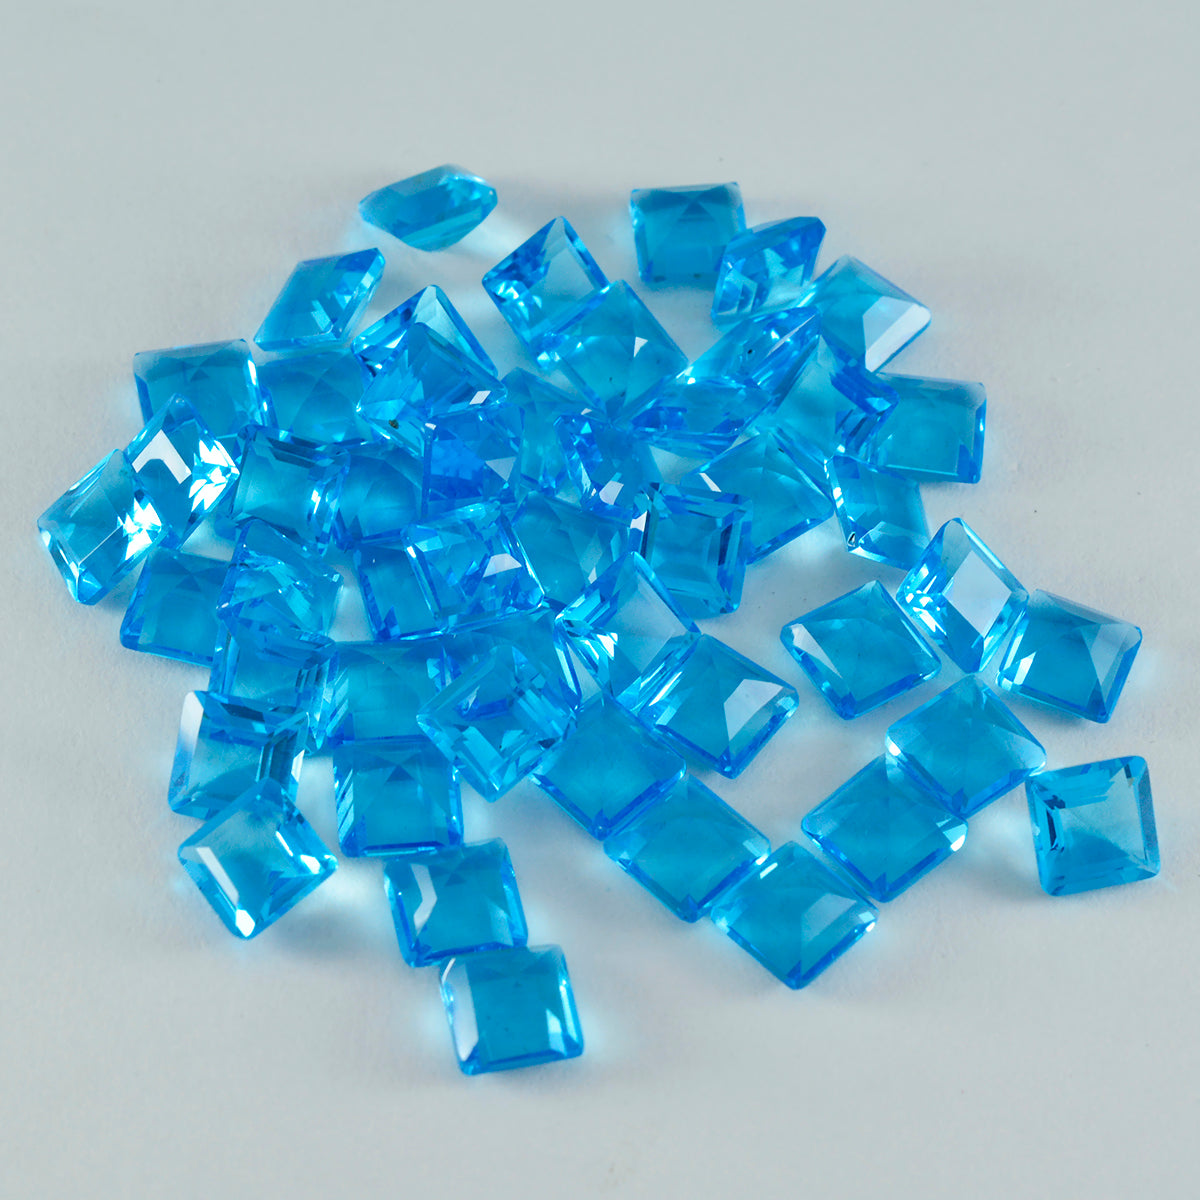 riyogems 1 шт. синий топаз cz ограненный 6x6 мм квадратной формы драгоценные камни привлекательного качества